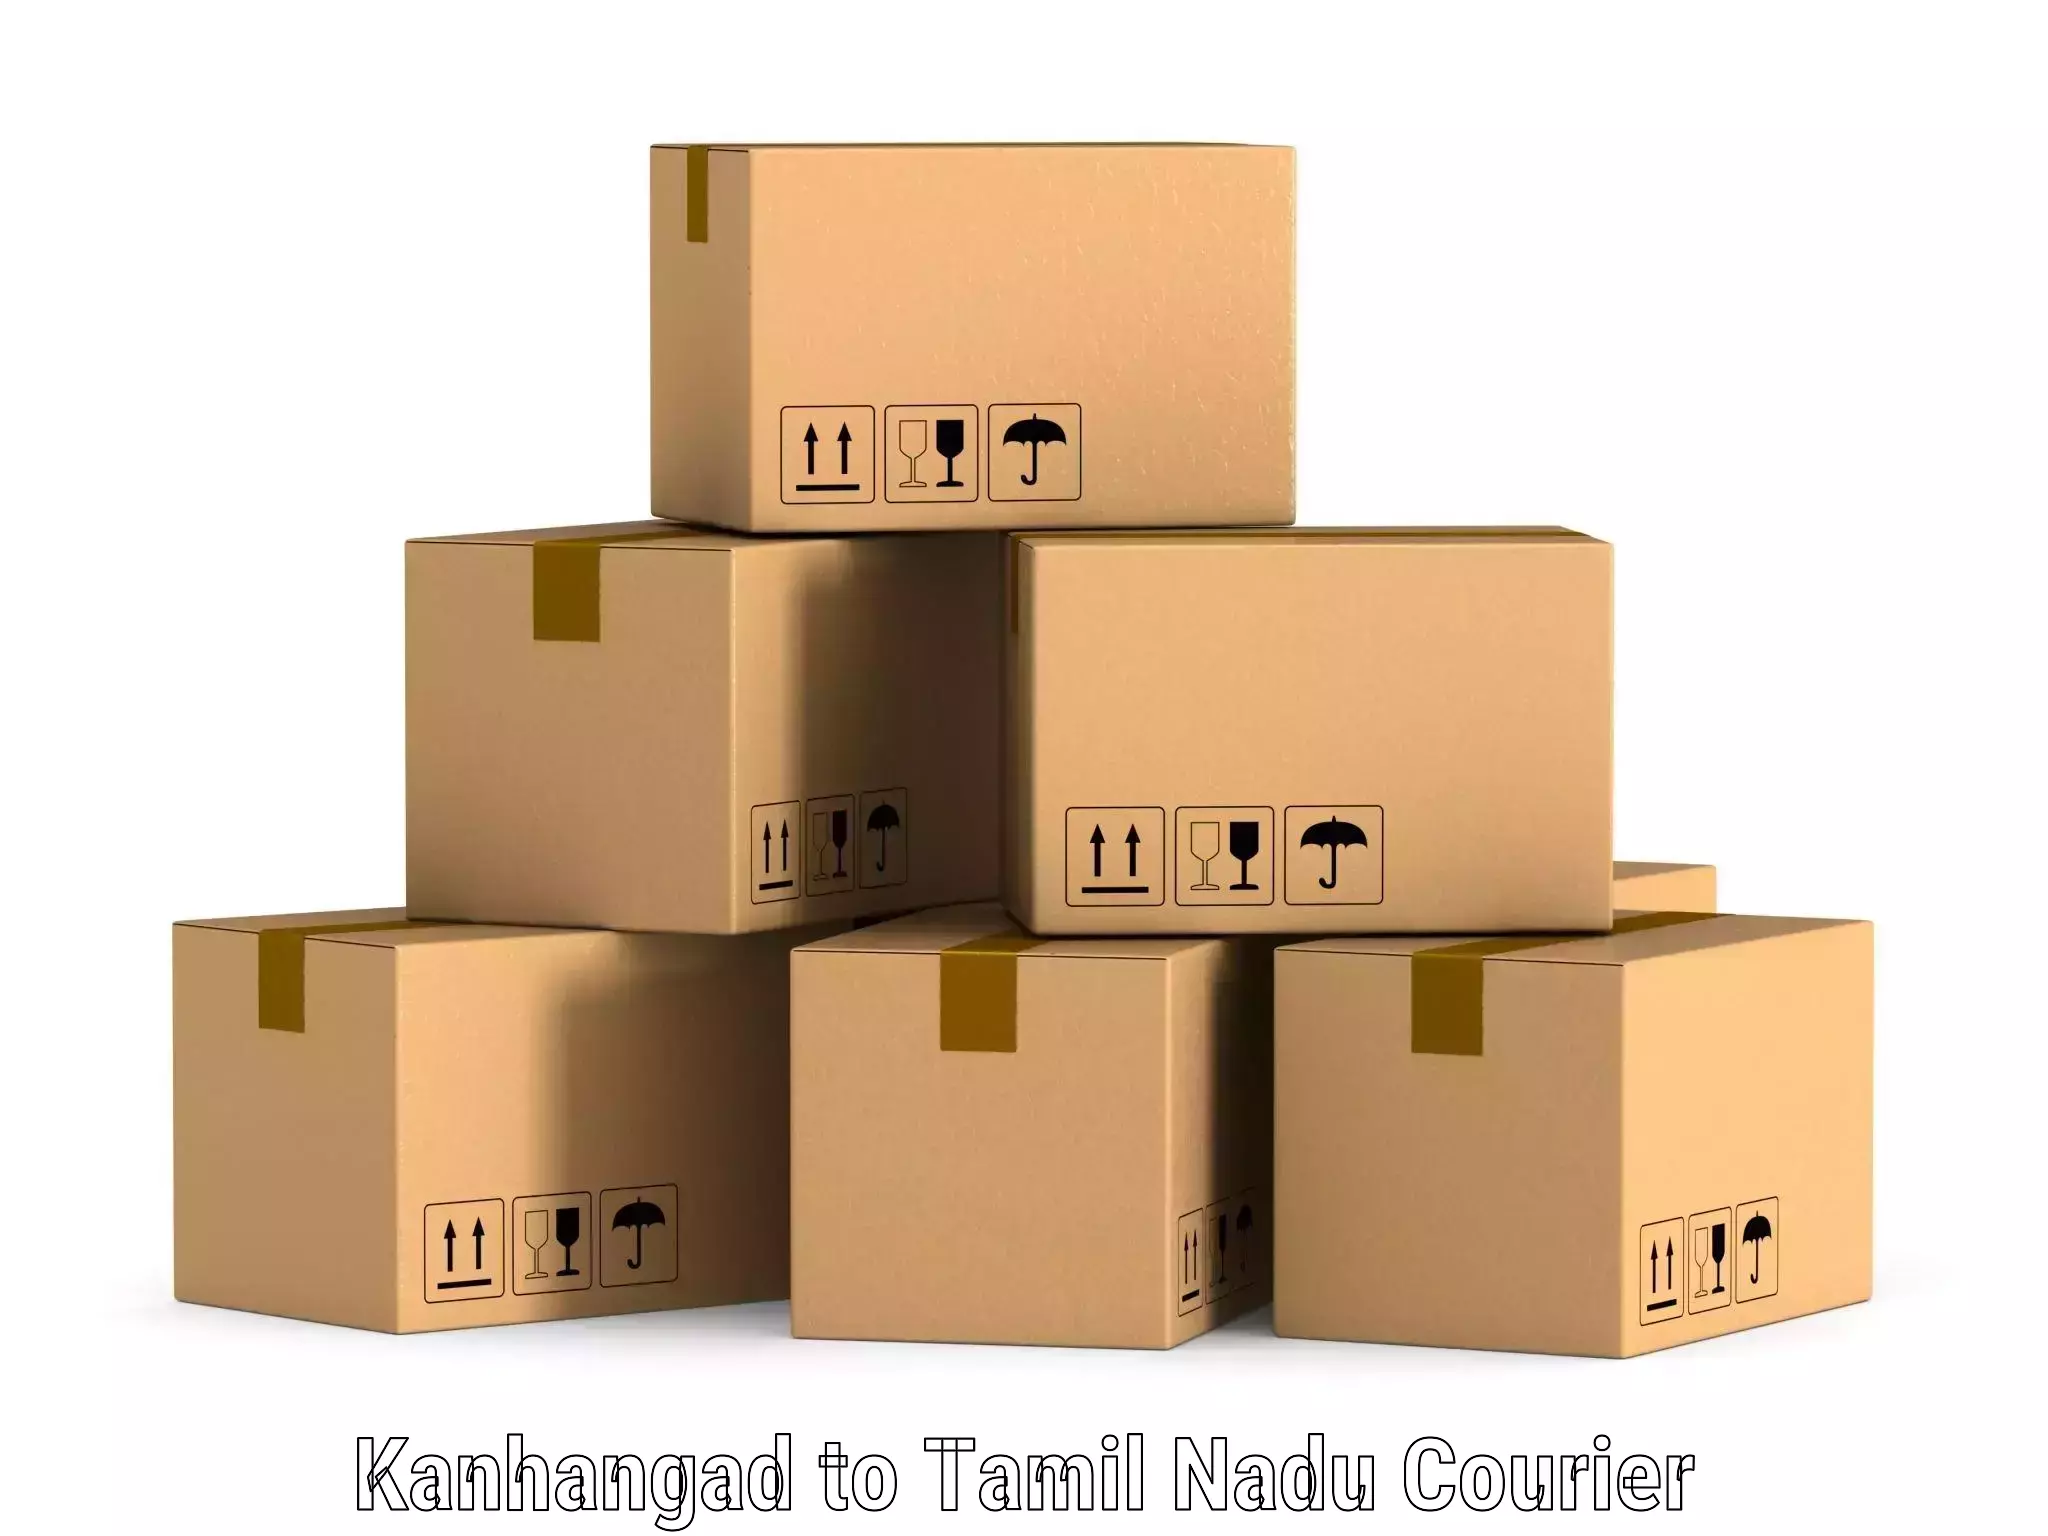 Global shipping solutions Kanhangad to Tiruvallur